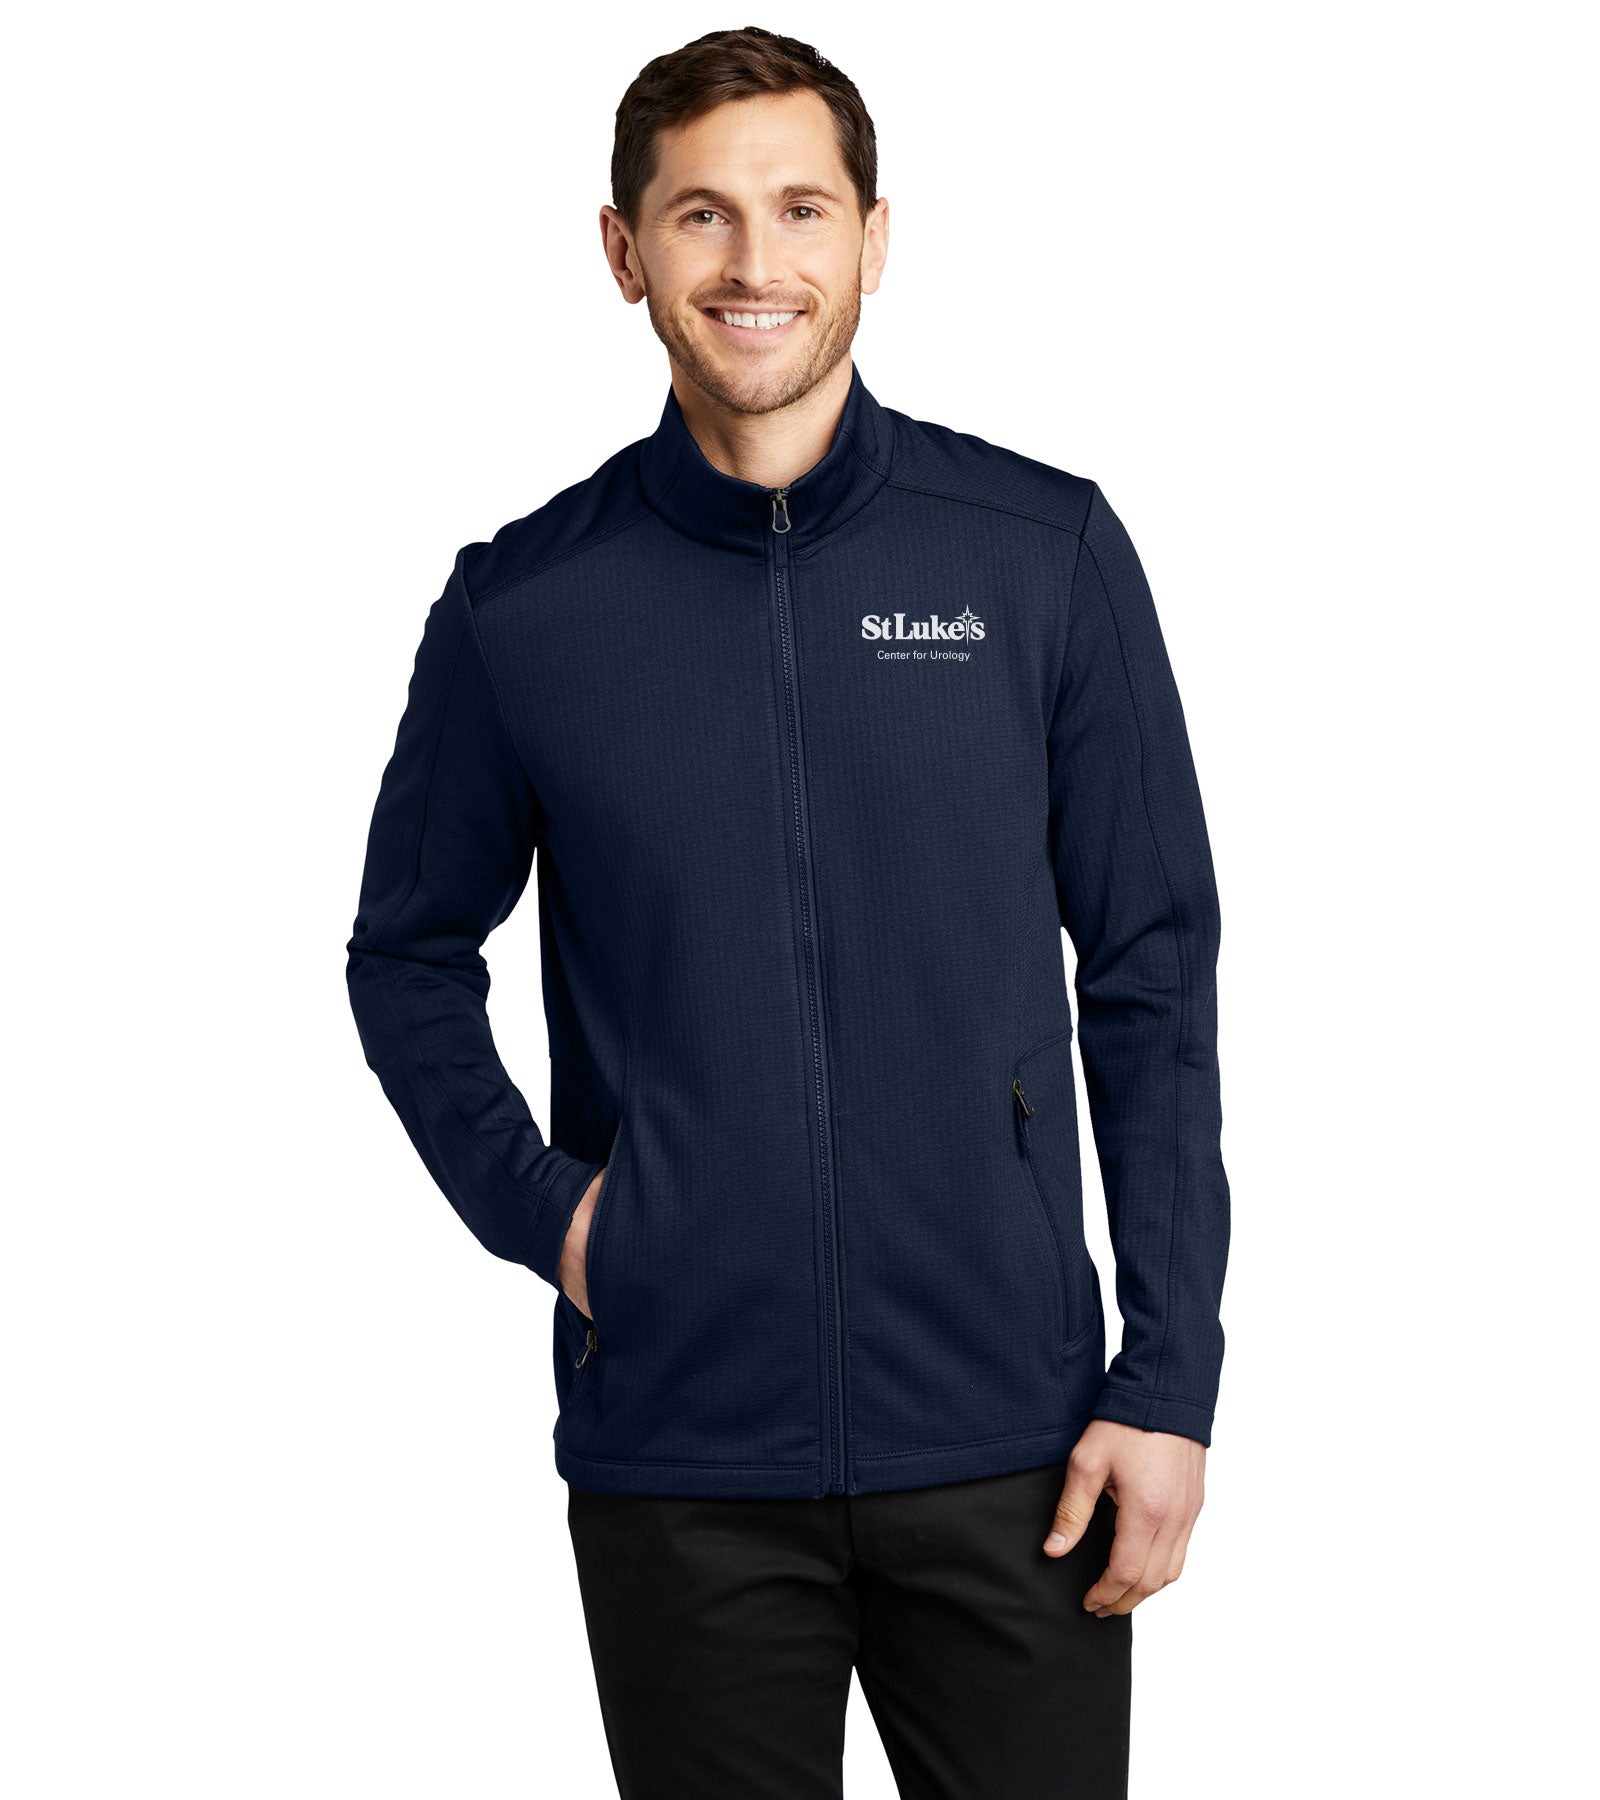 Port Authority Network Fleece Jacket, Product